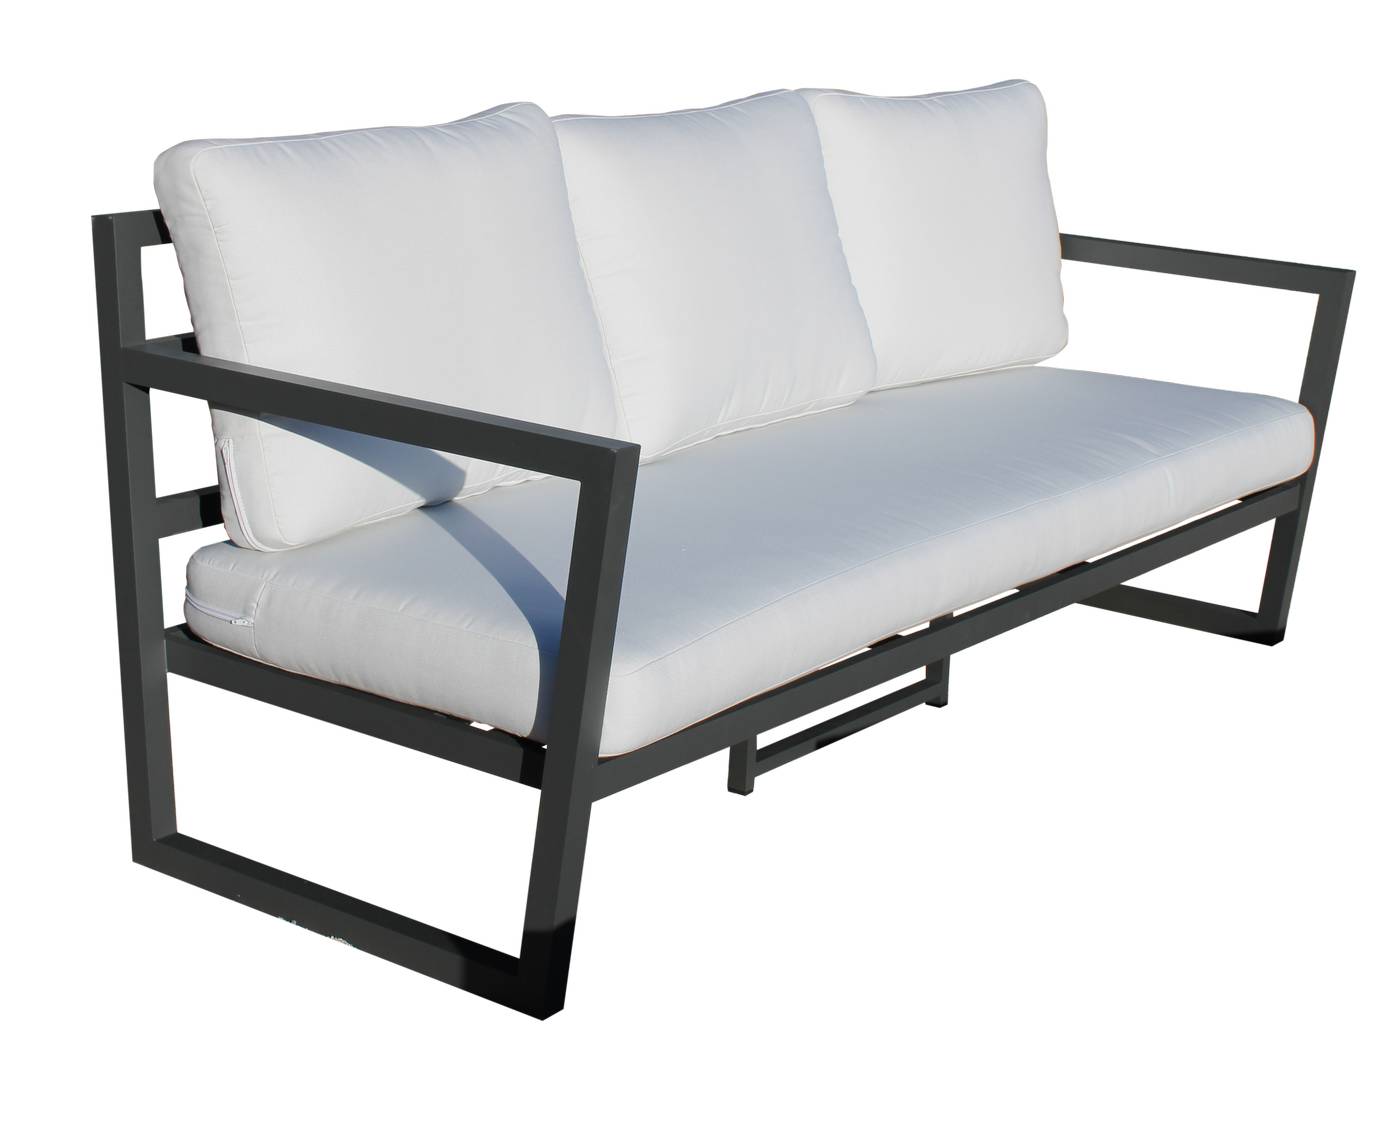 Sofá relax 3 plazas de aluminio para exterior. Disponible en cinco colores diferentes.